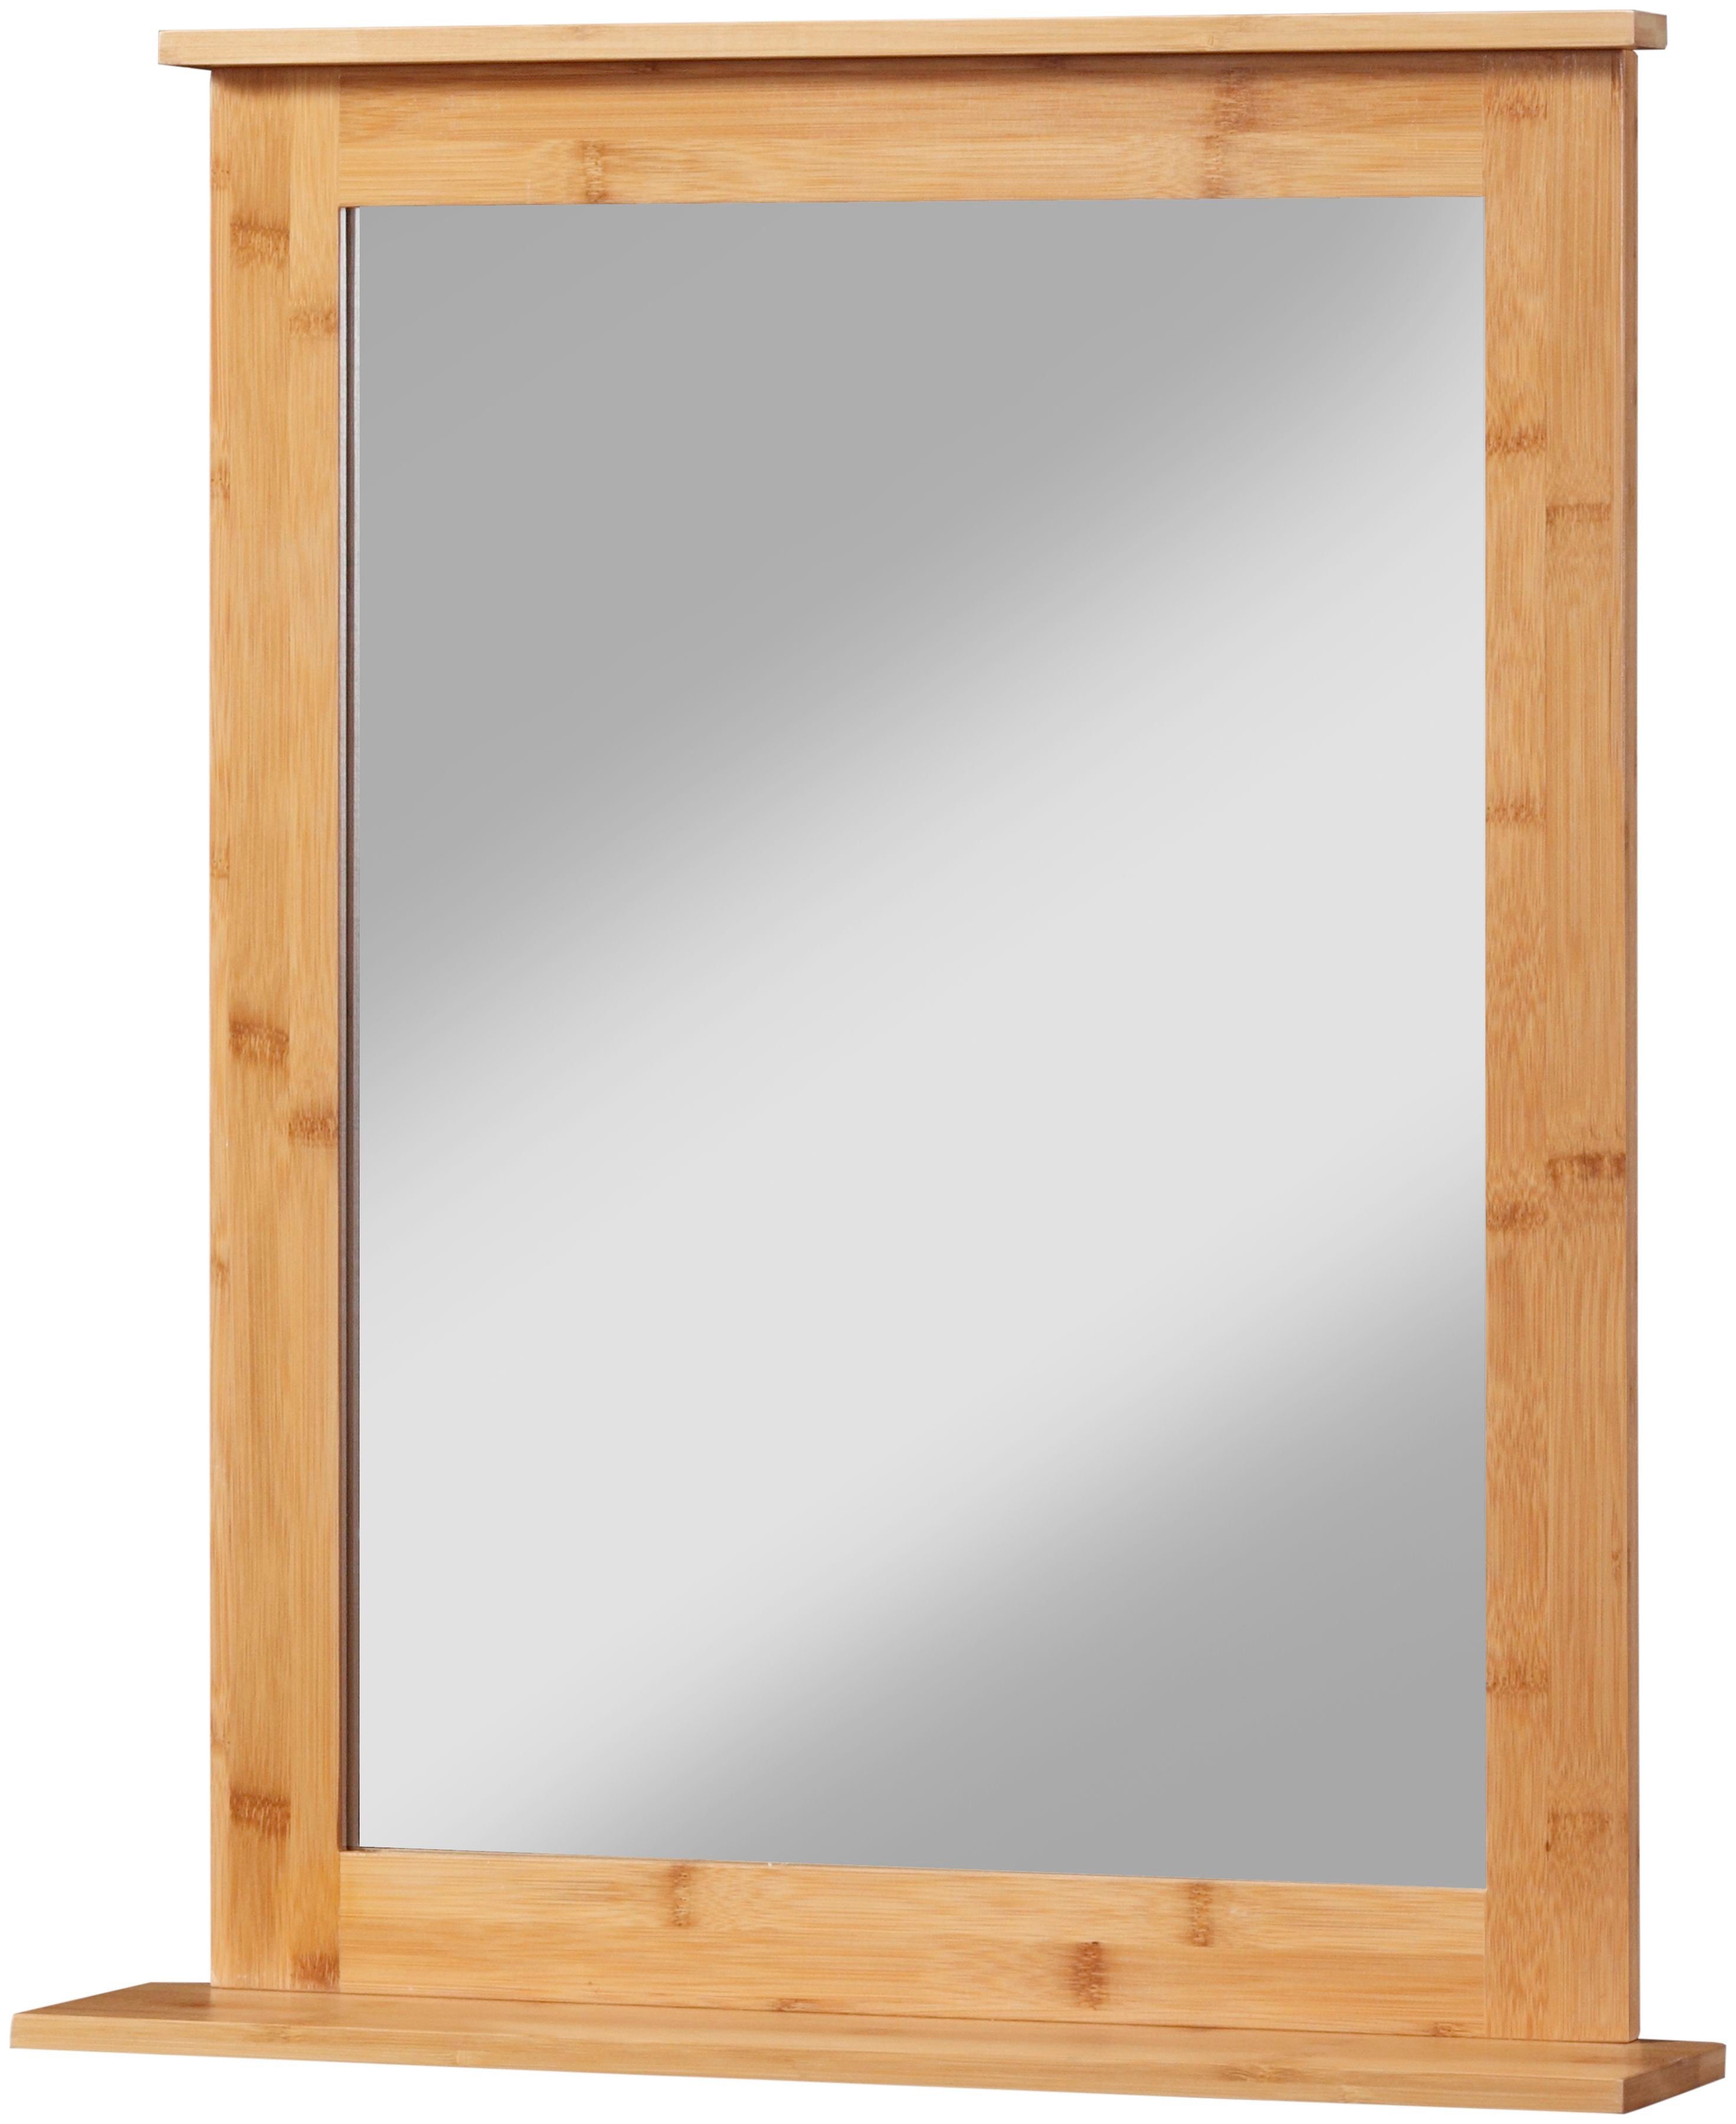 welltime Badspiegel Bambus New, Badezimmerspiegel mit Bambus-Rahmen, eckig 58x70cm